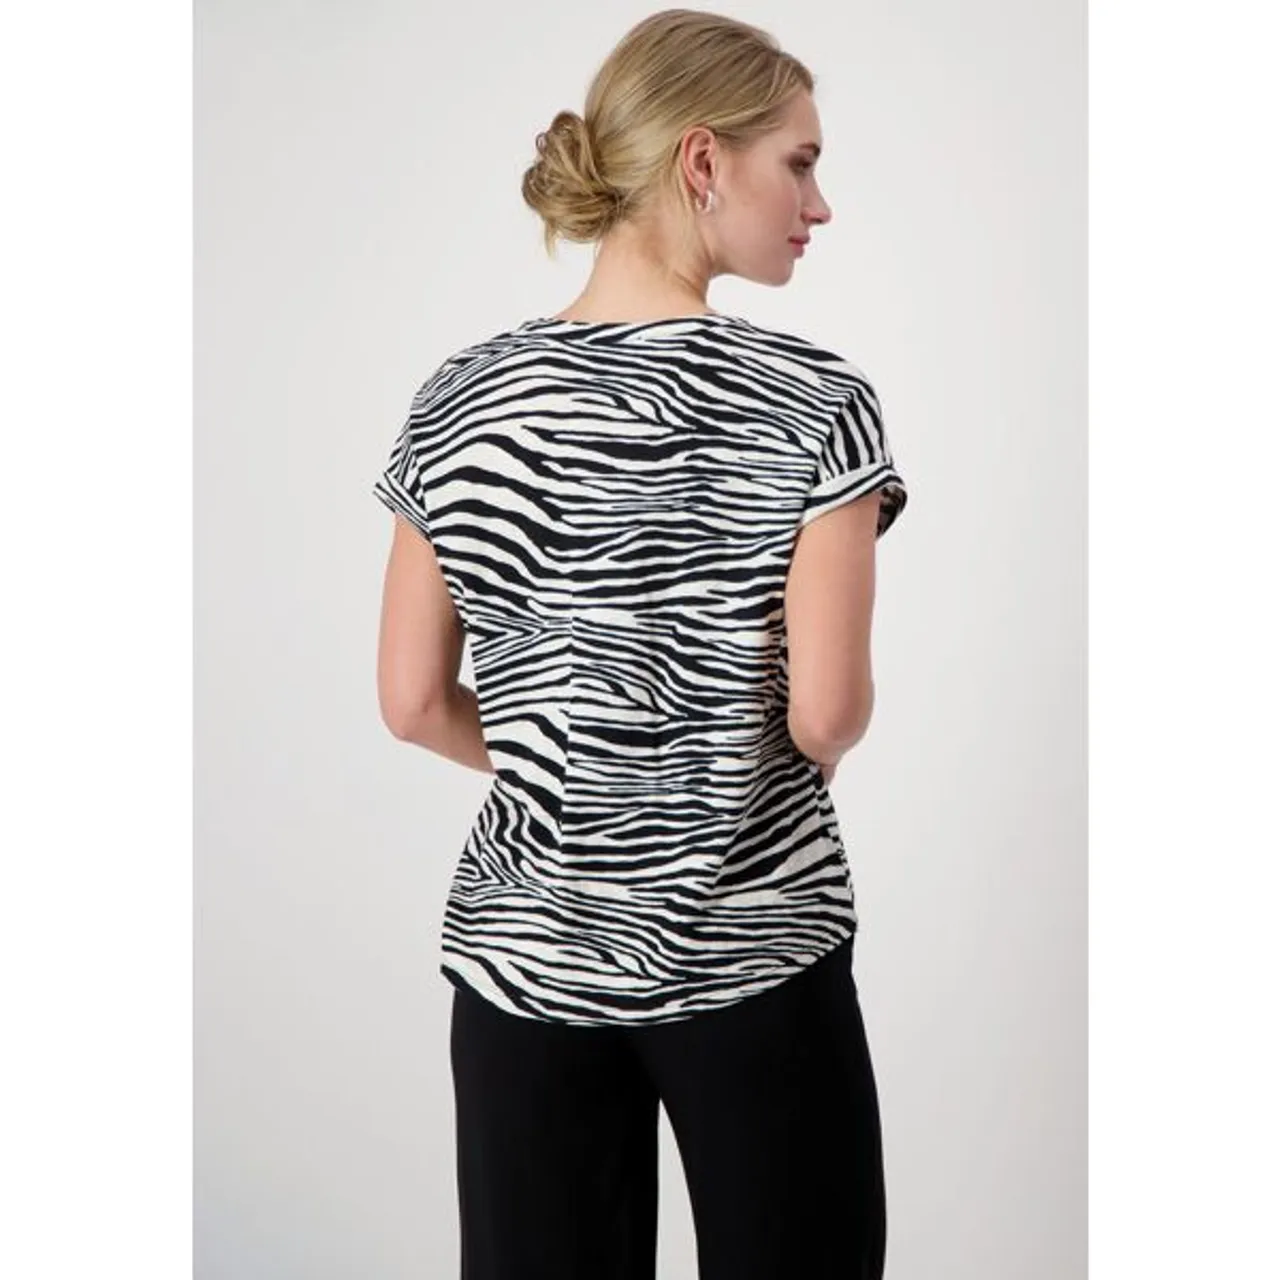 T-Shirt MONARI Gr. 40, schwarz (schwarz weiß) Damen Shirts Jersey mit Animalprint